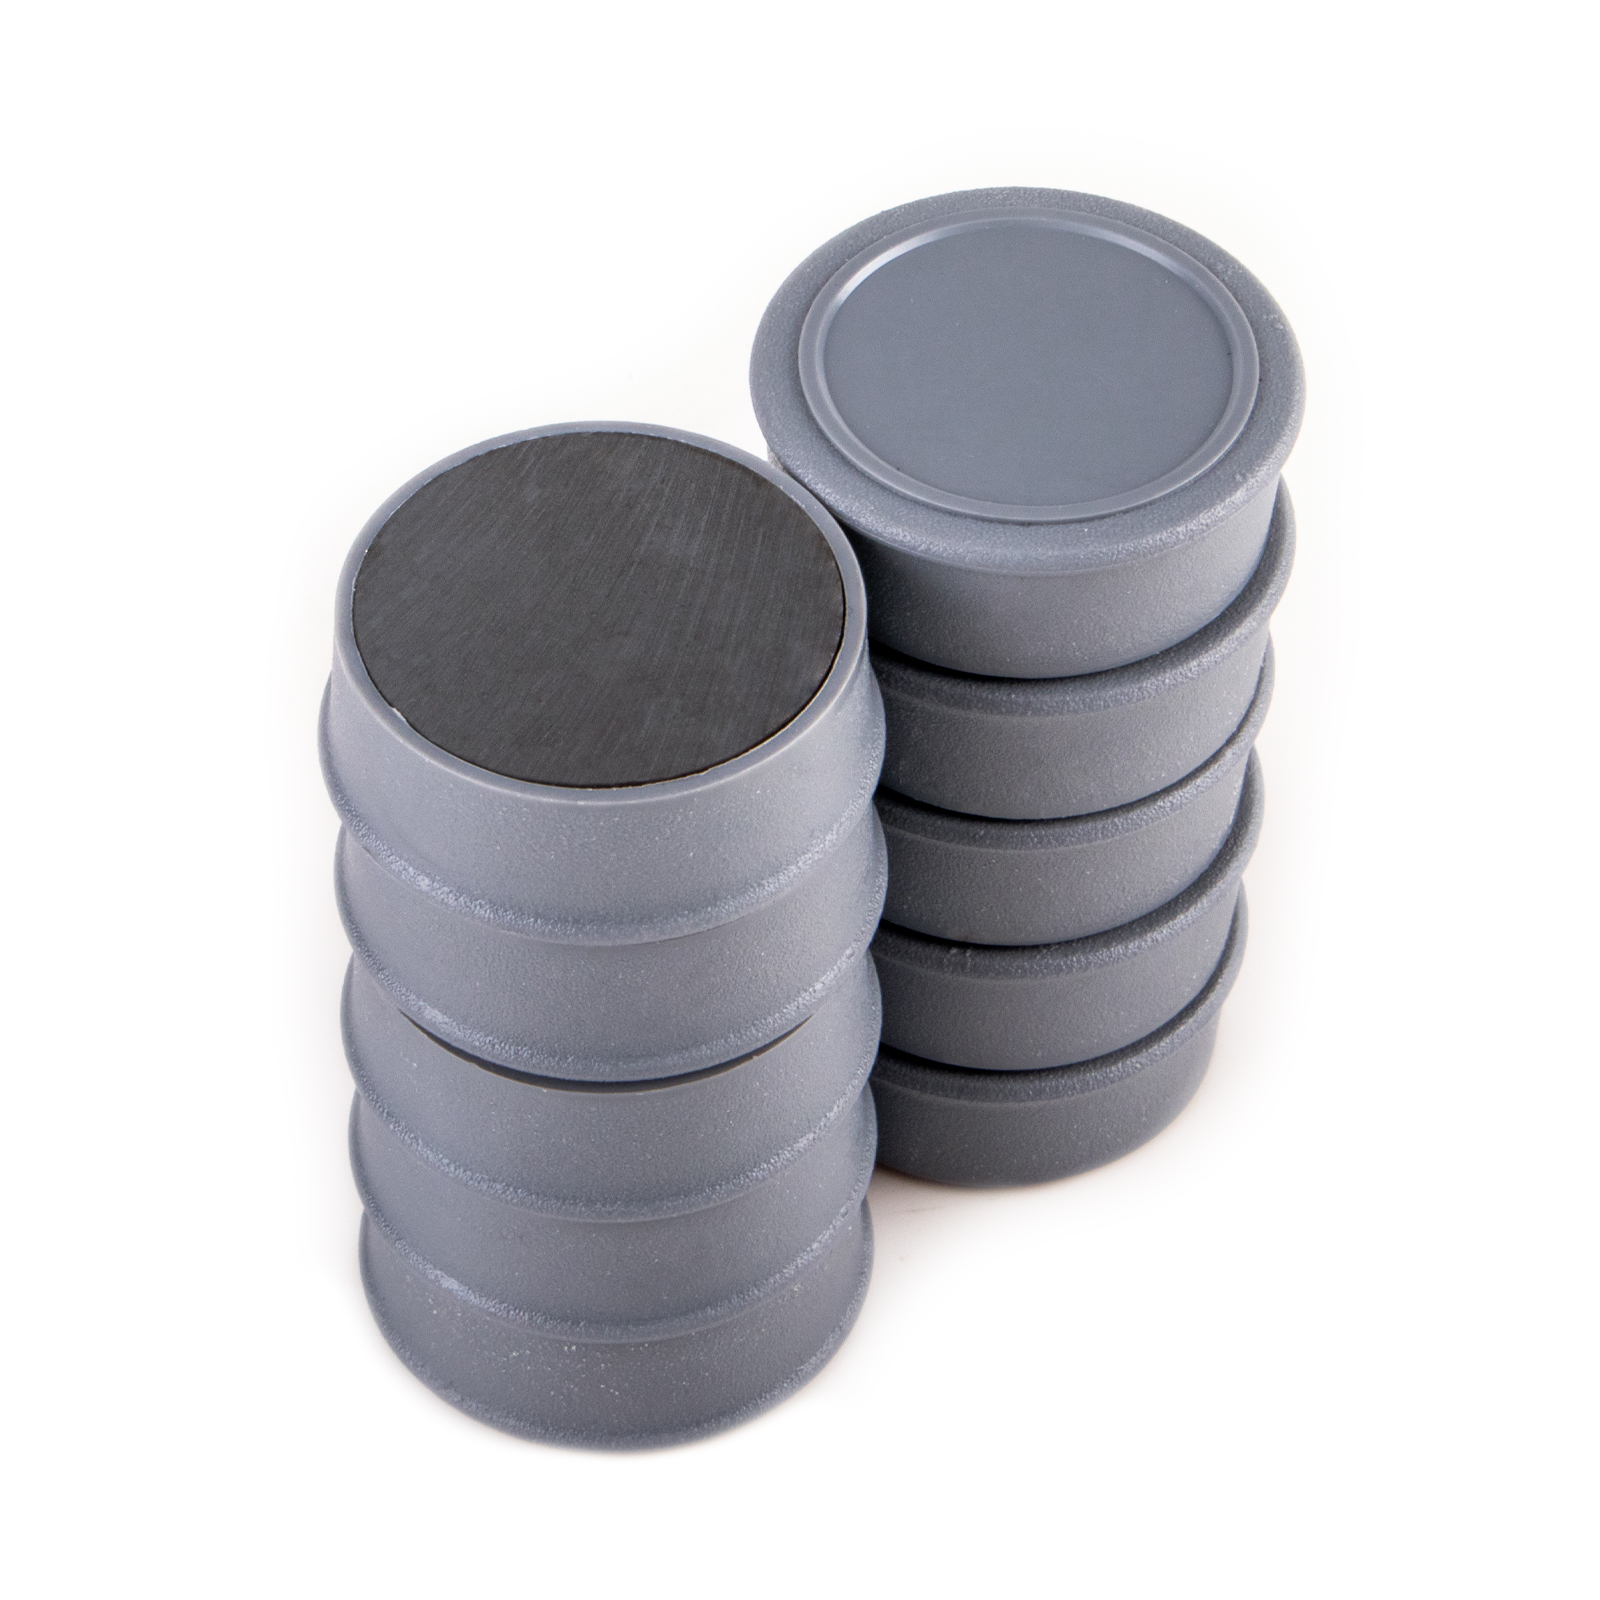 10 gris aimants mémo Ø 35 x 12 mm FERRITE avec zone d'étiquette